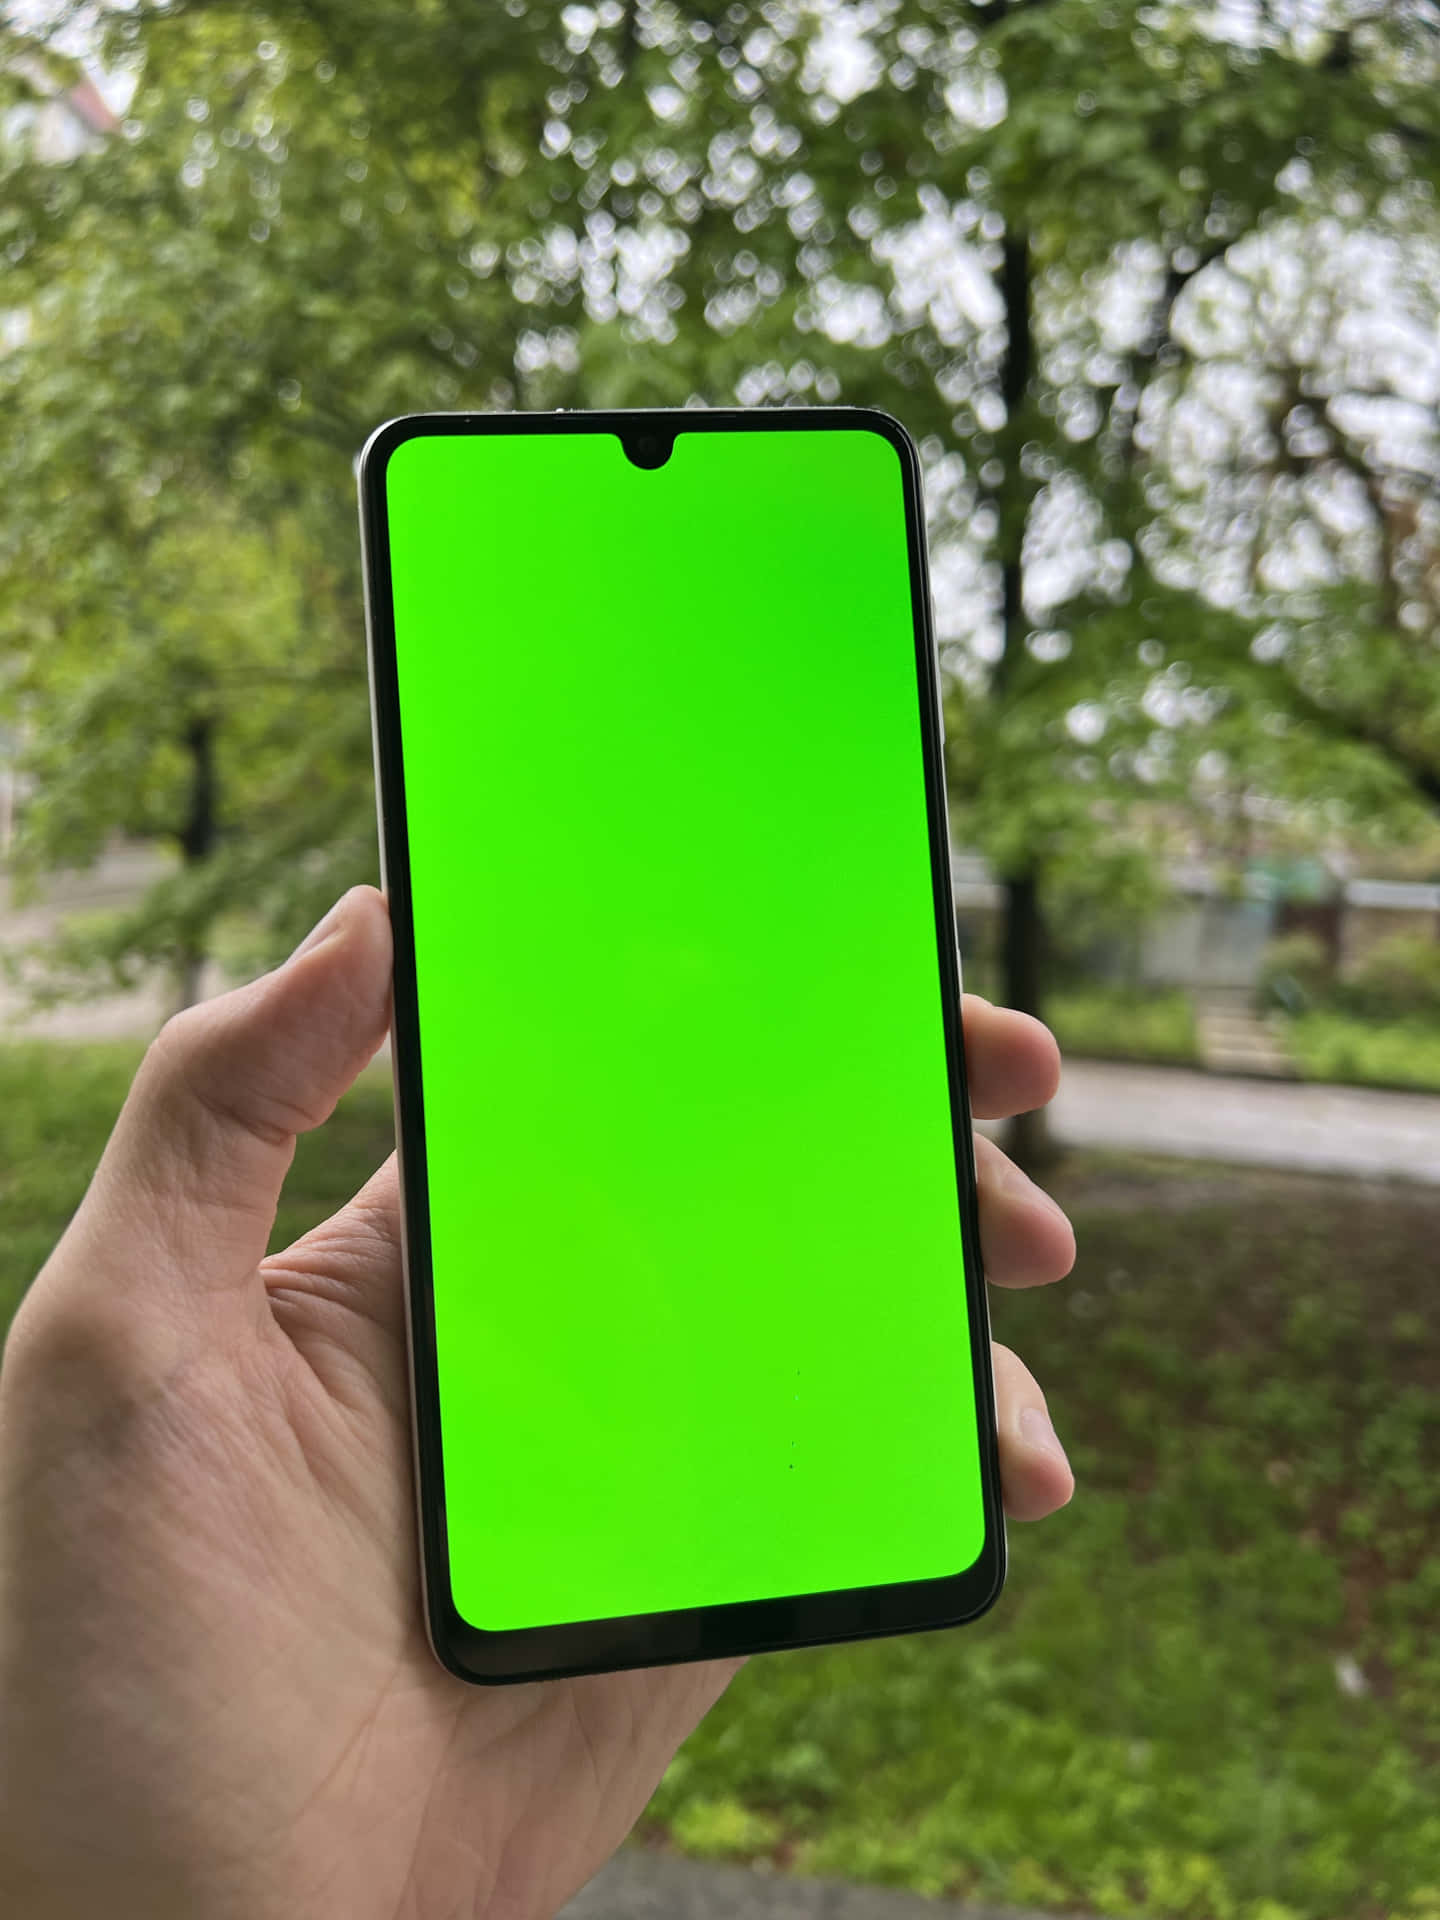 Enperson Der Holder En Smartphone Med En Grøn Skærm.